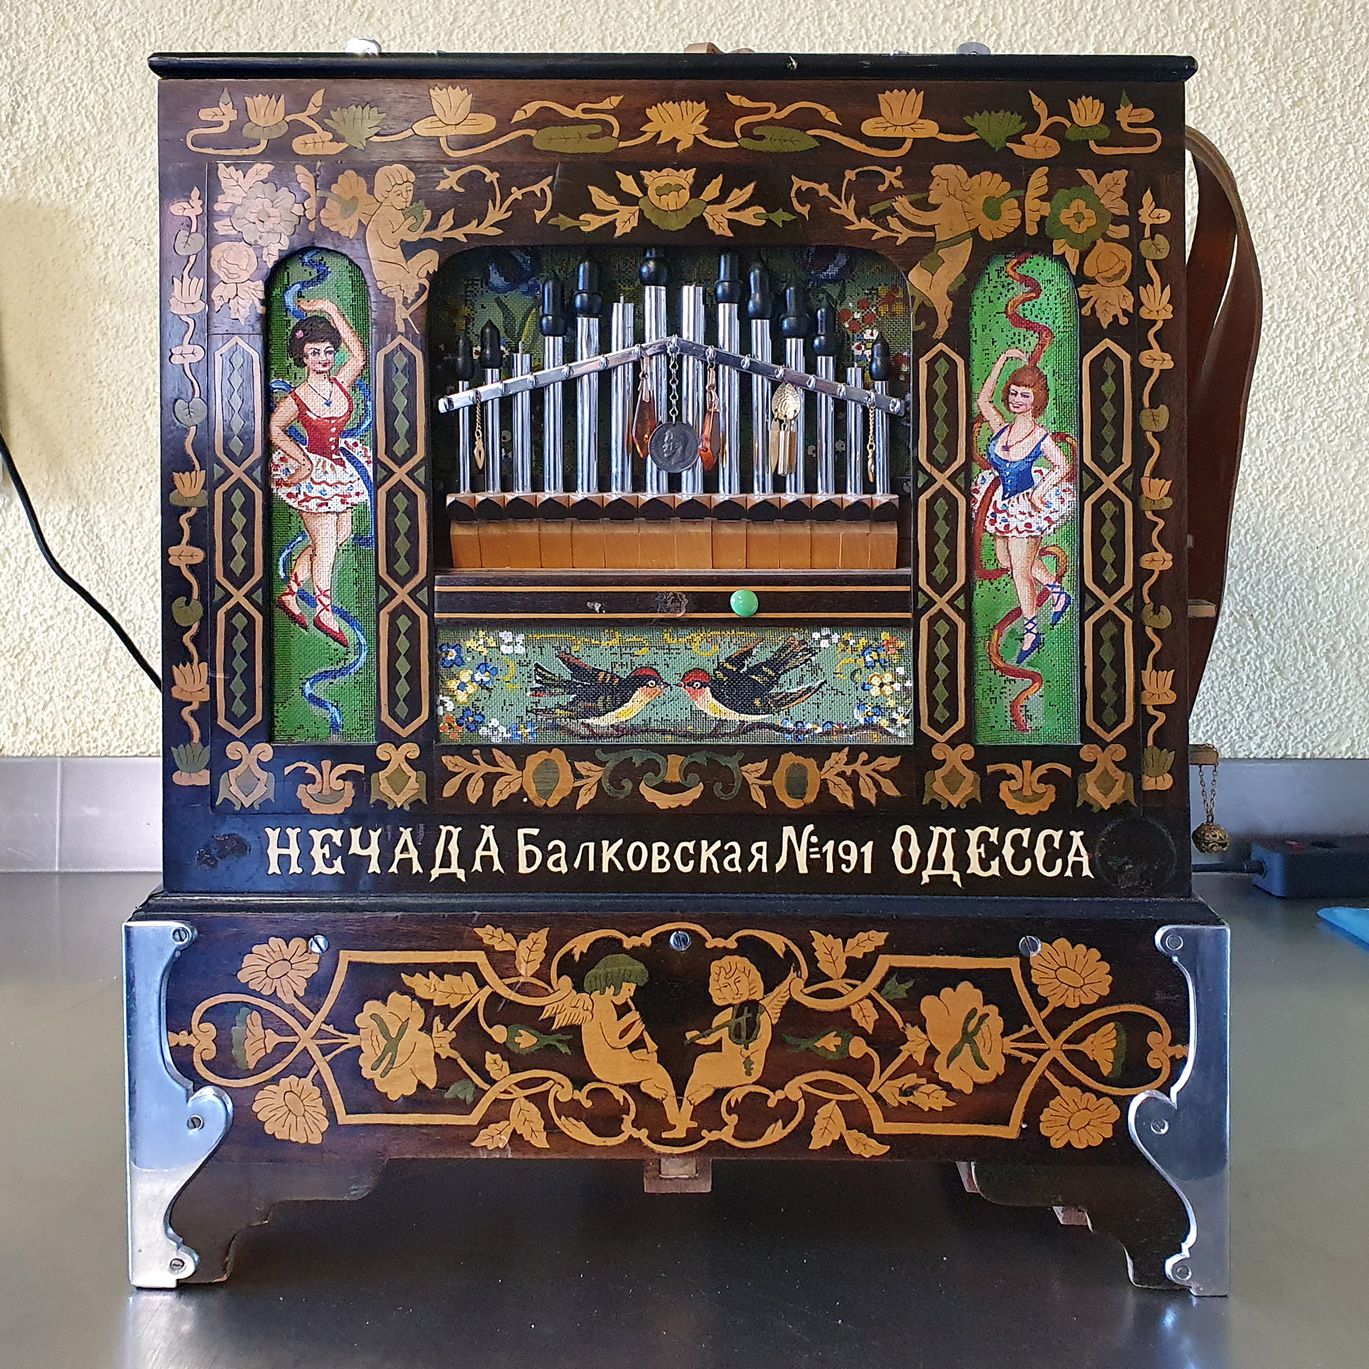 Street Organ from I.Nechada factory (Odessa) around 1910 
Eine wunderbare Orgel &hellip;